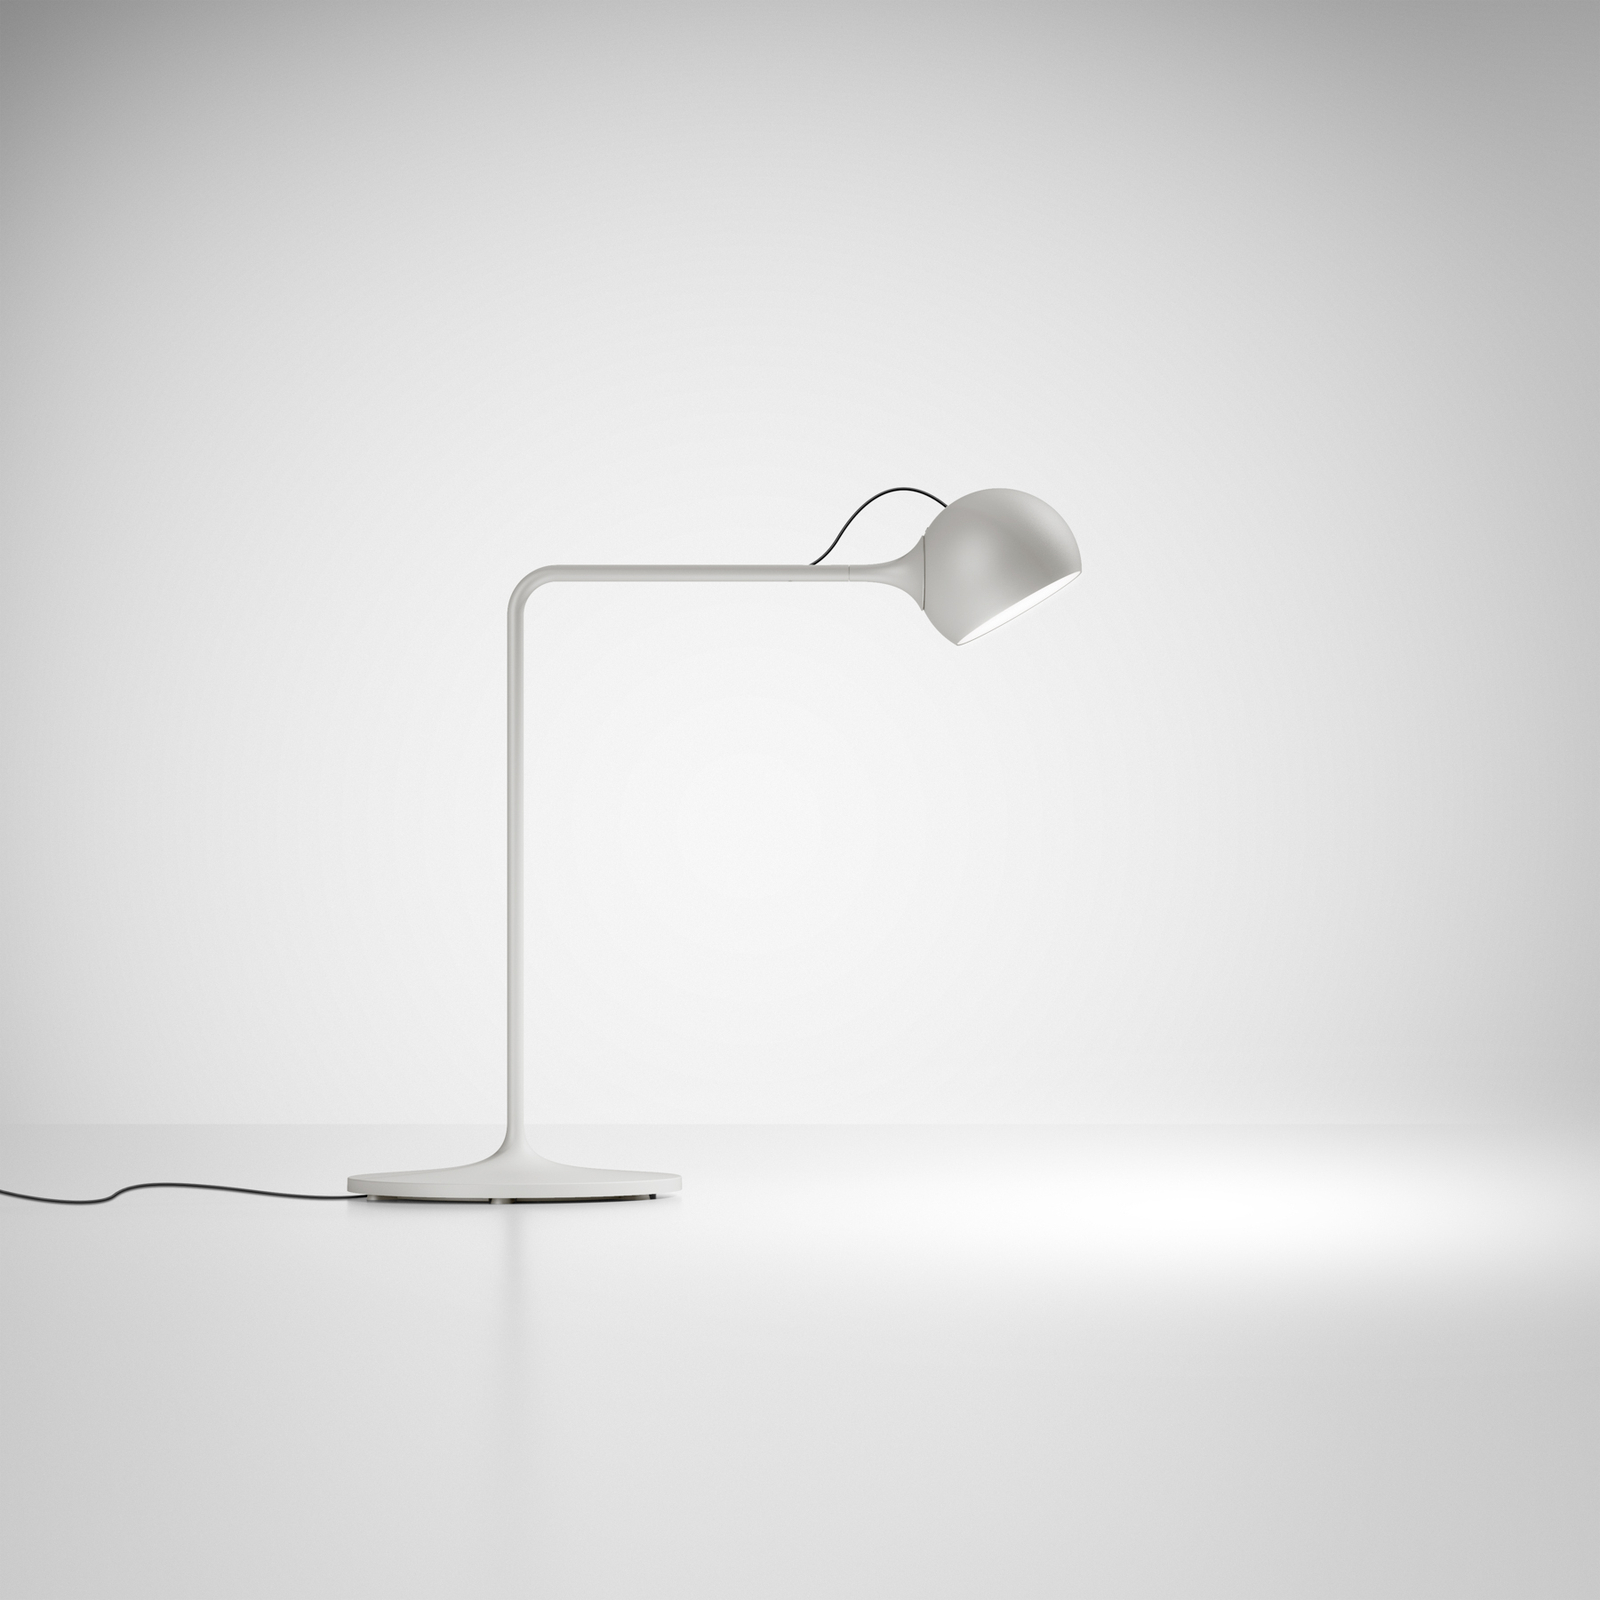 Artemide lxa LED asztali világítás, fehér-szürke